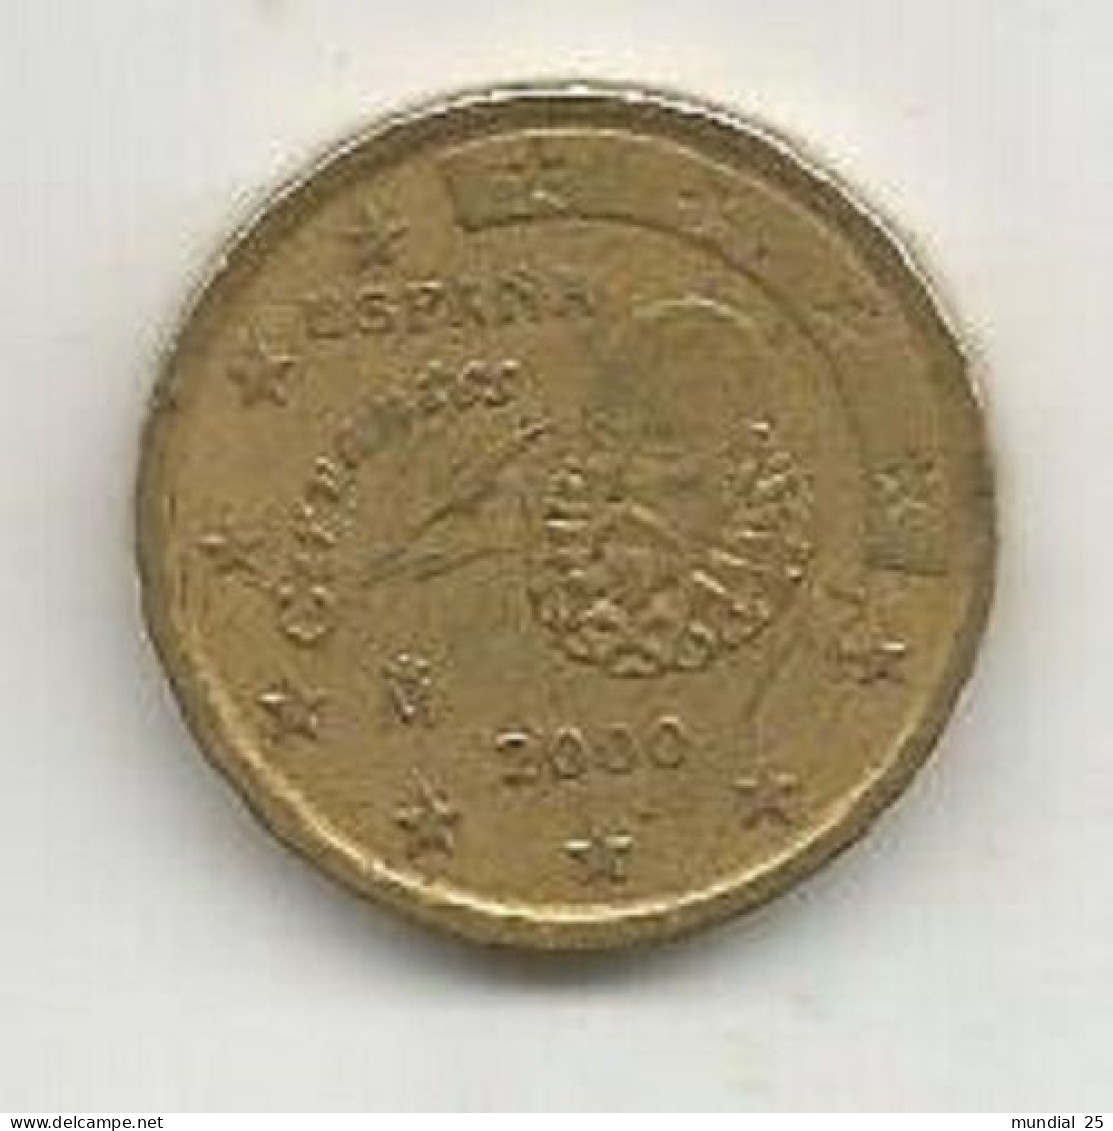 SPAIN 10 EURO CENT 2000 M - Espagne